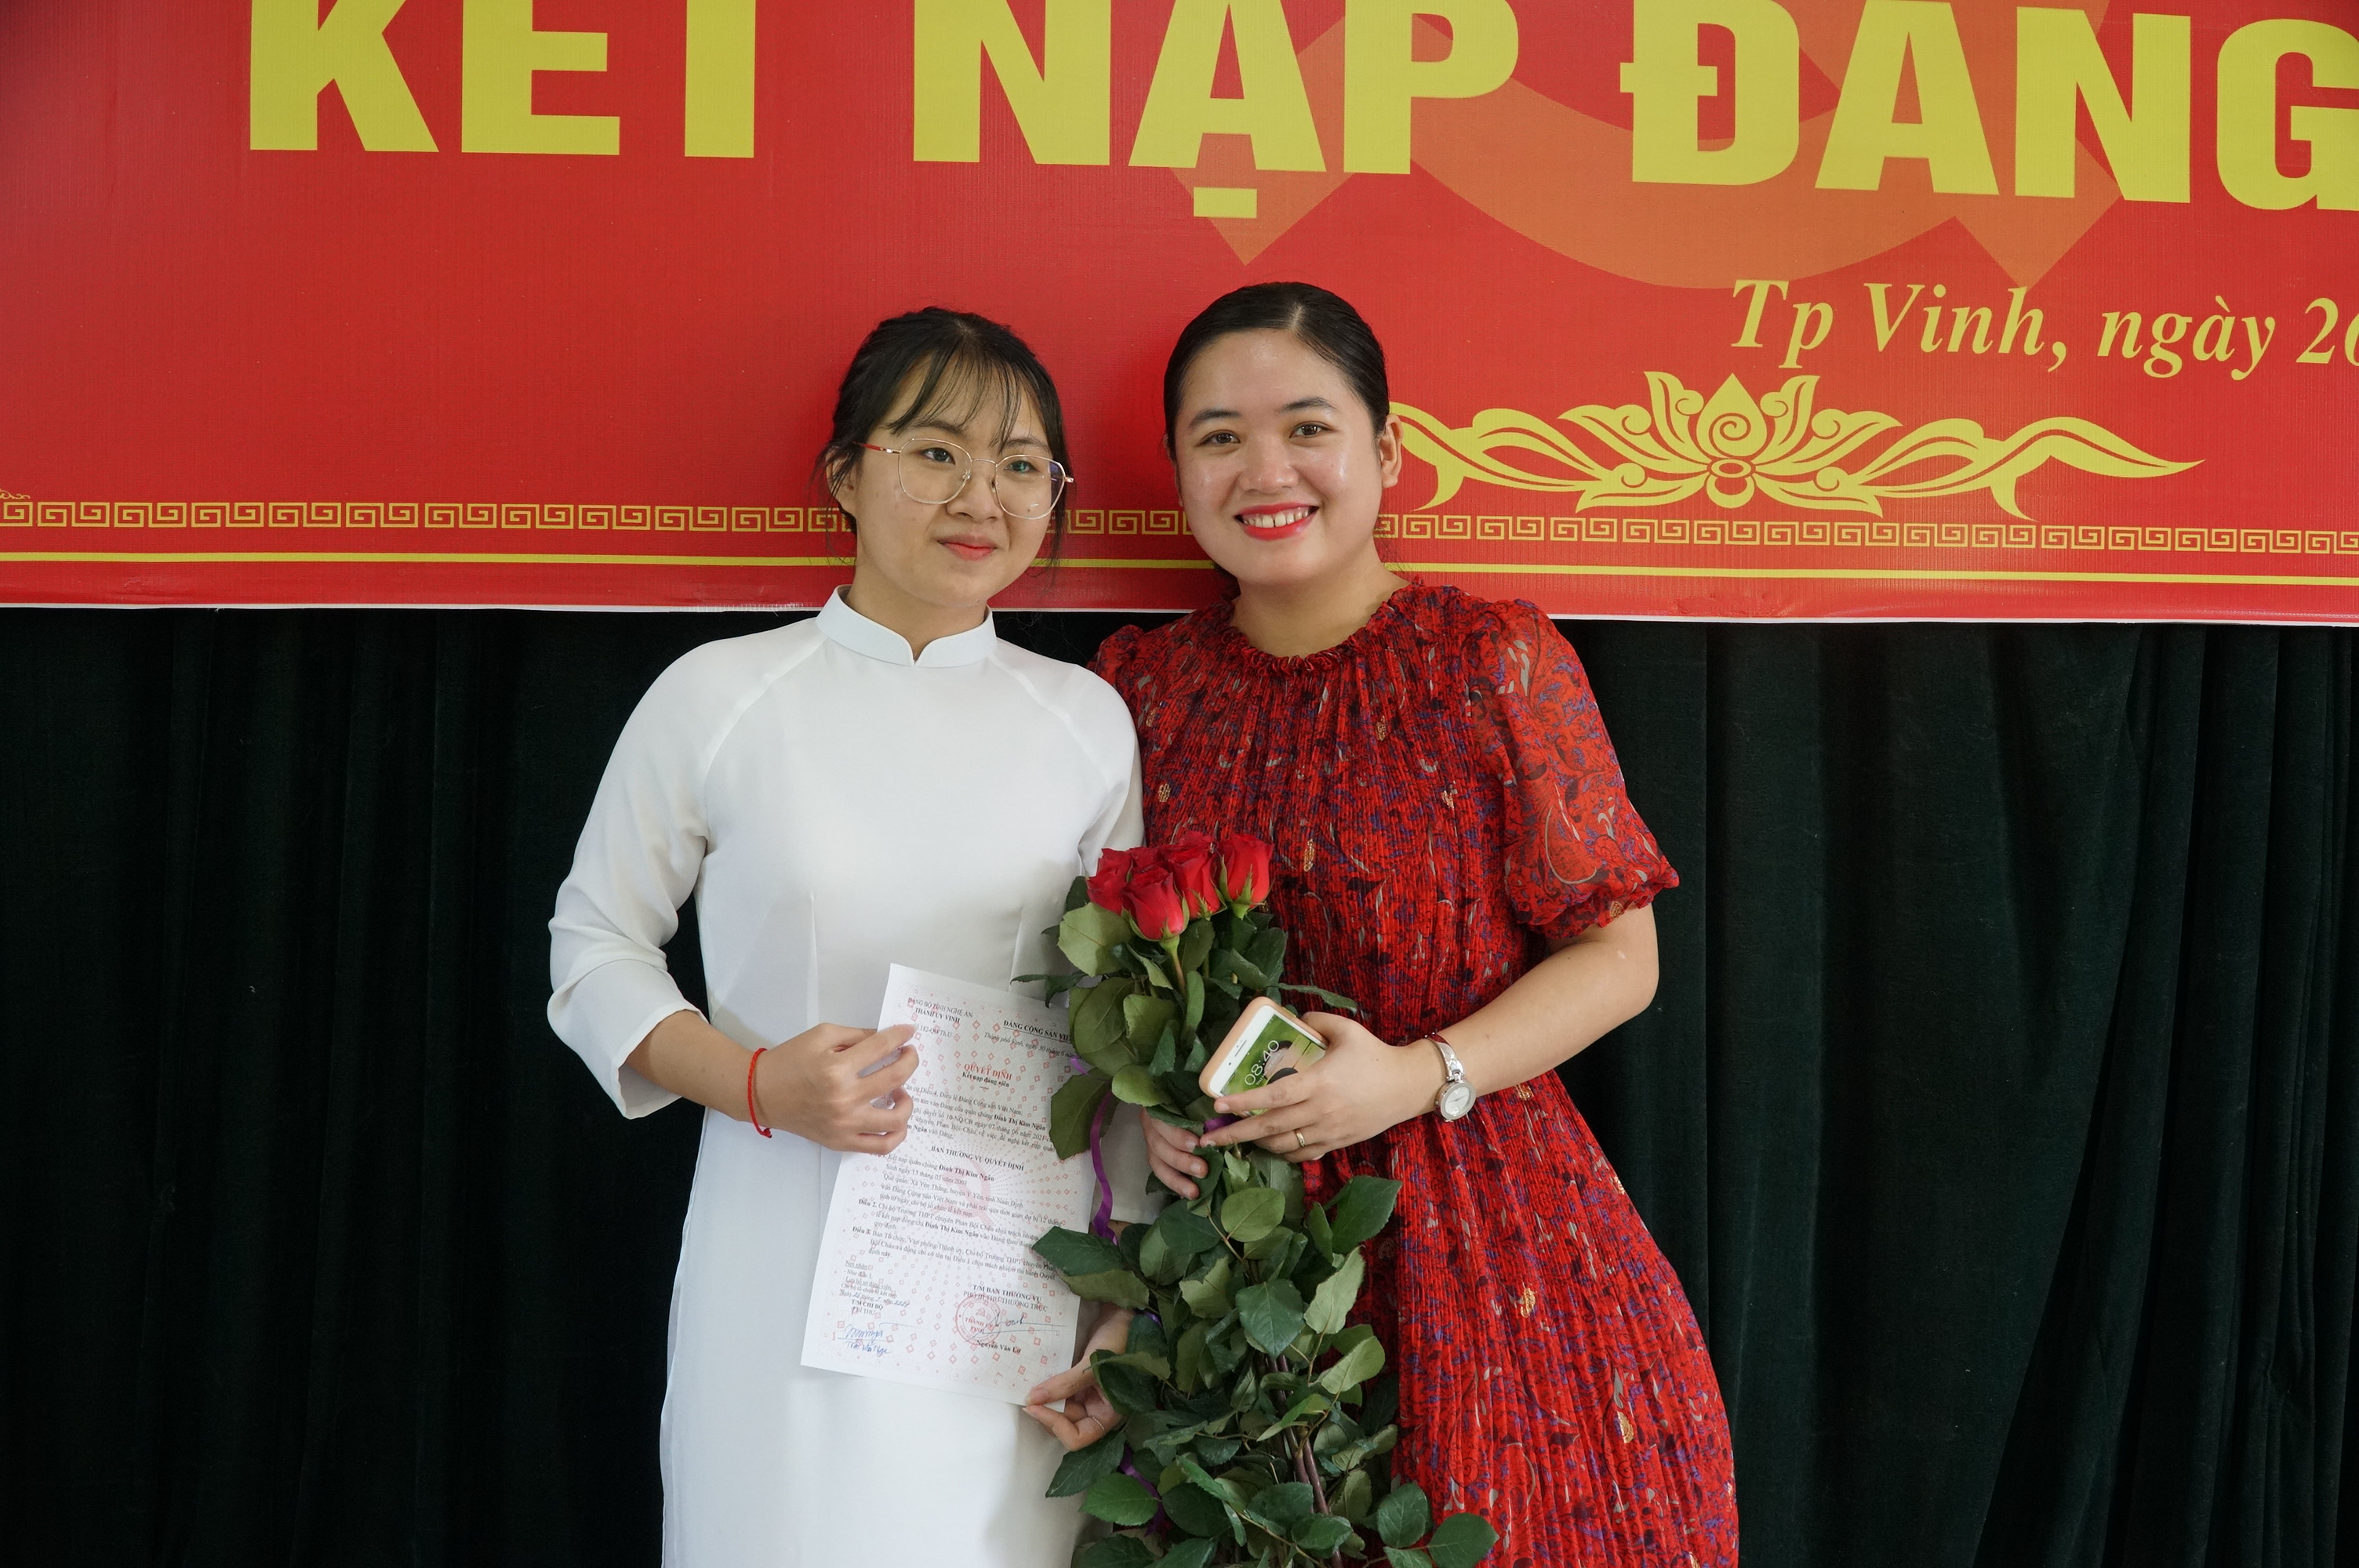 Em Bùi Thị Kim Ngân và cô giáo chủ nhiệm tại lễ kết nạp Đảng. Ảnh: Mỹ Hà